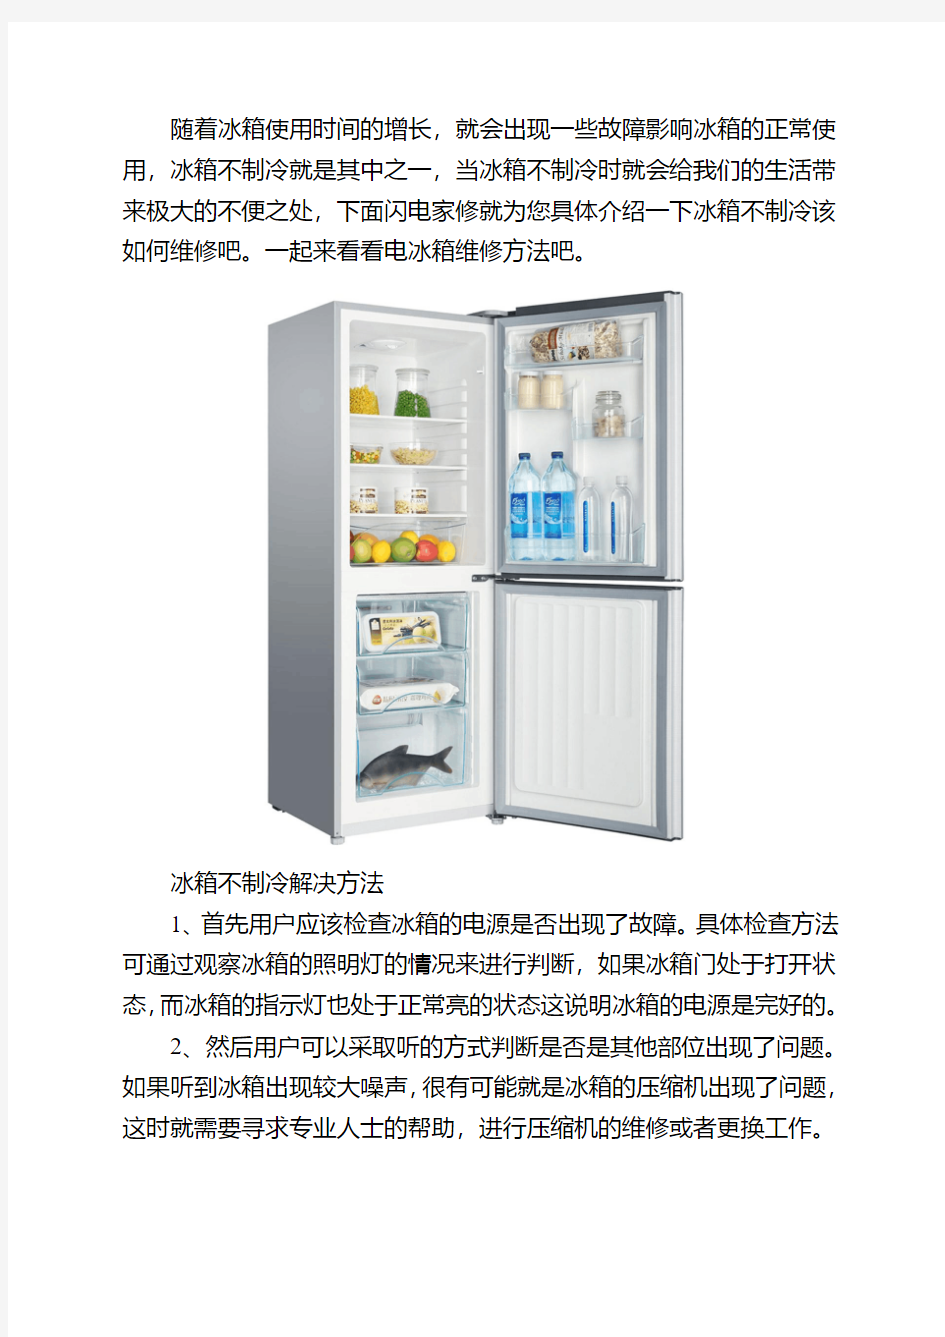 电冰箱维修方法